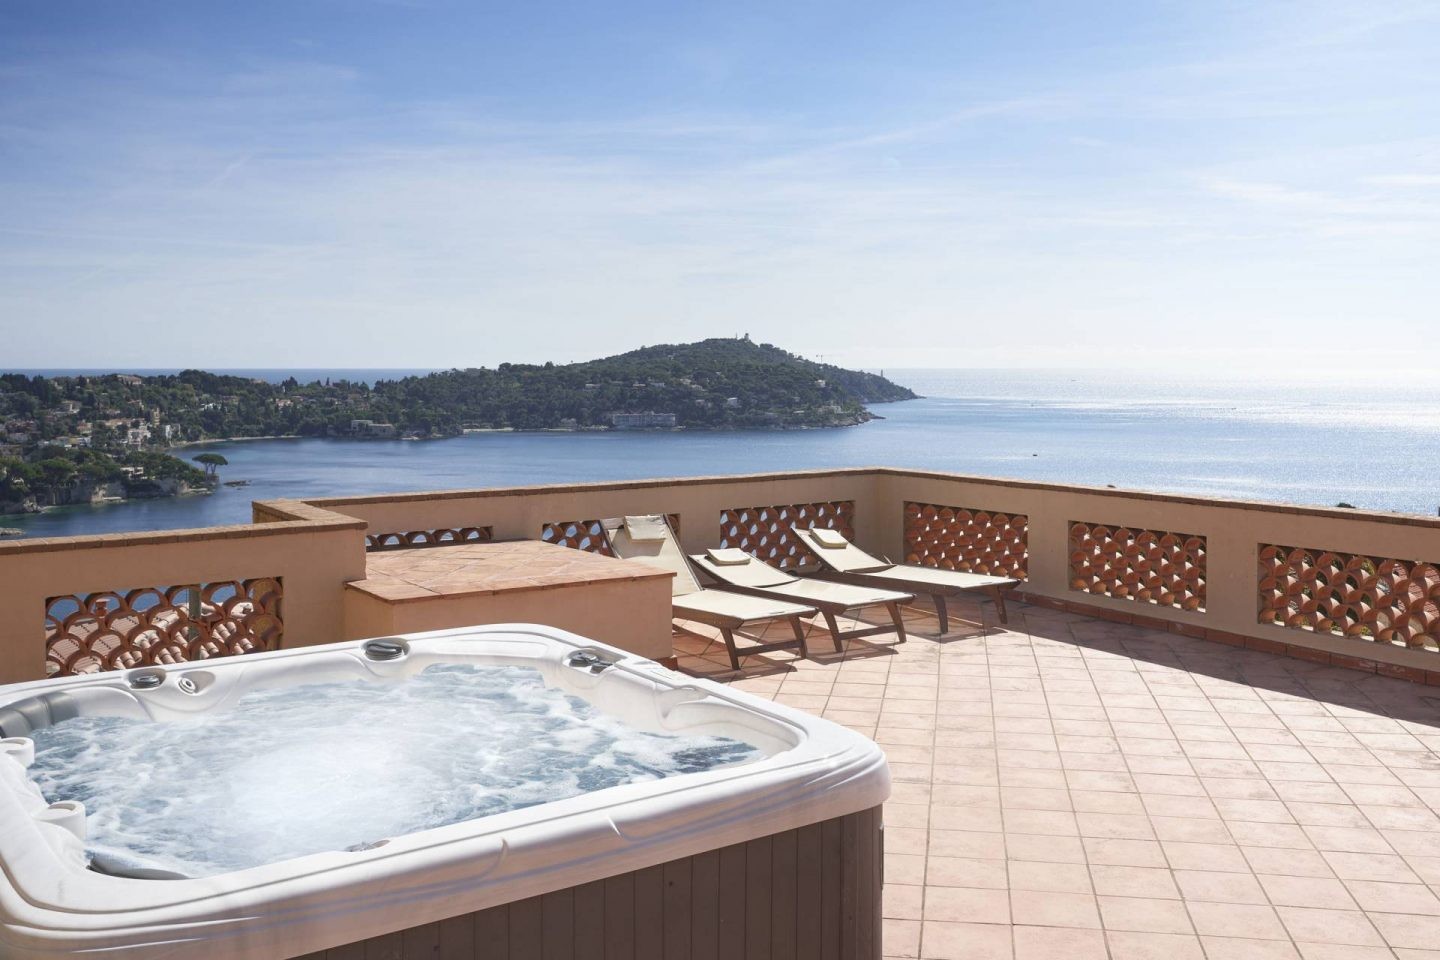 Détente dans la piscine se trouvant sur le toit de la demeure tout en admirant la somptueuse vue sur la Côte d'Azur.